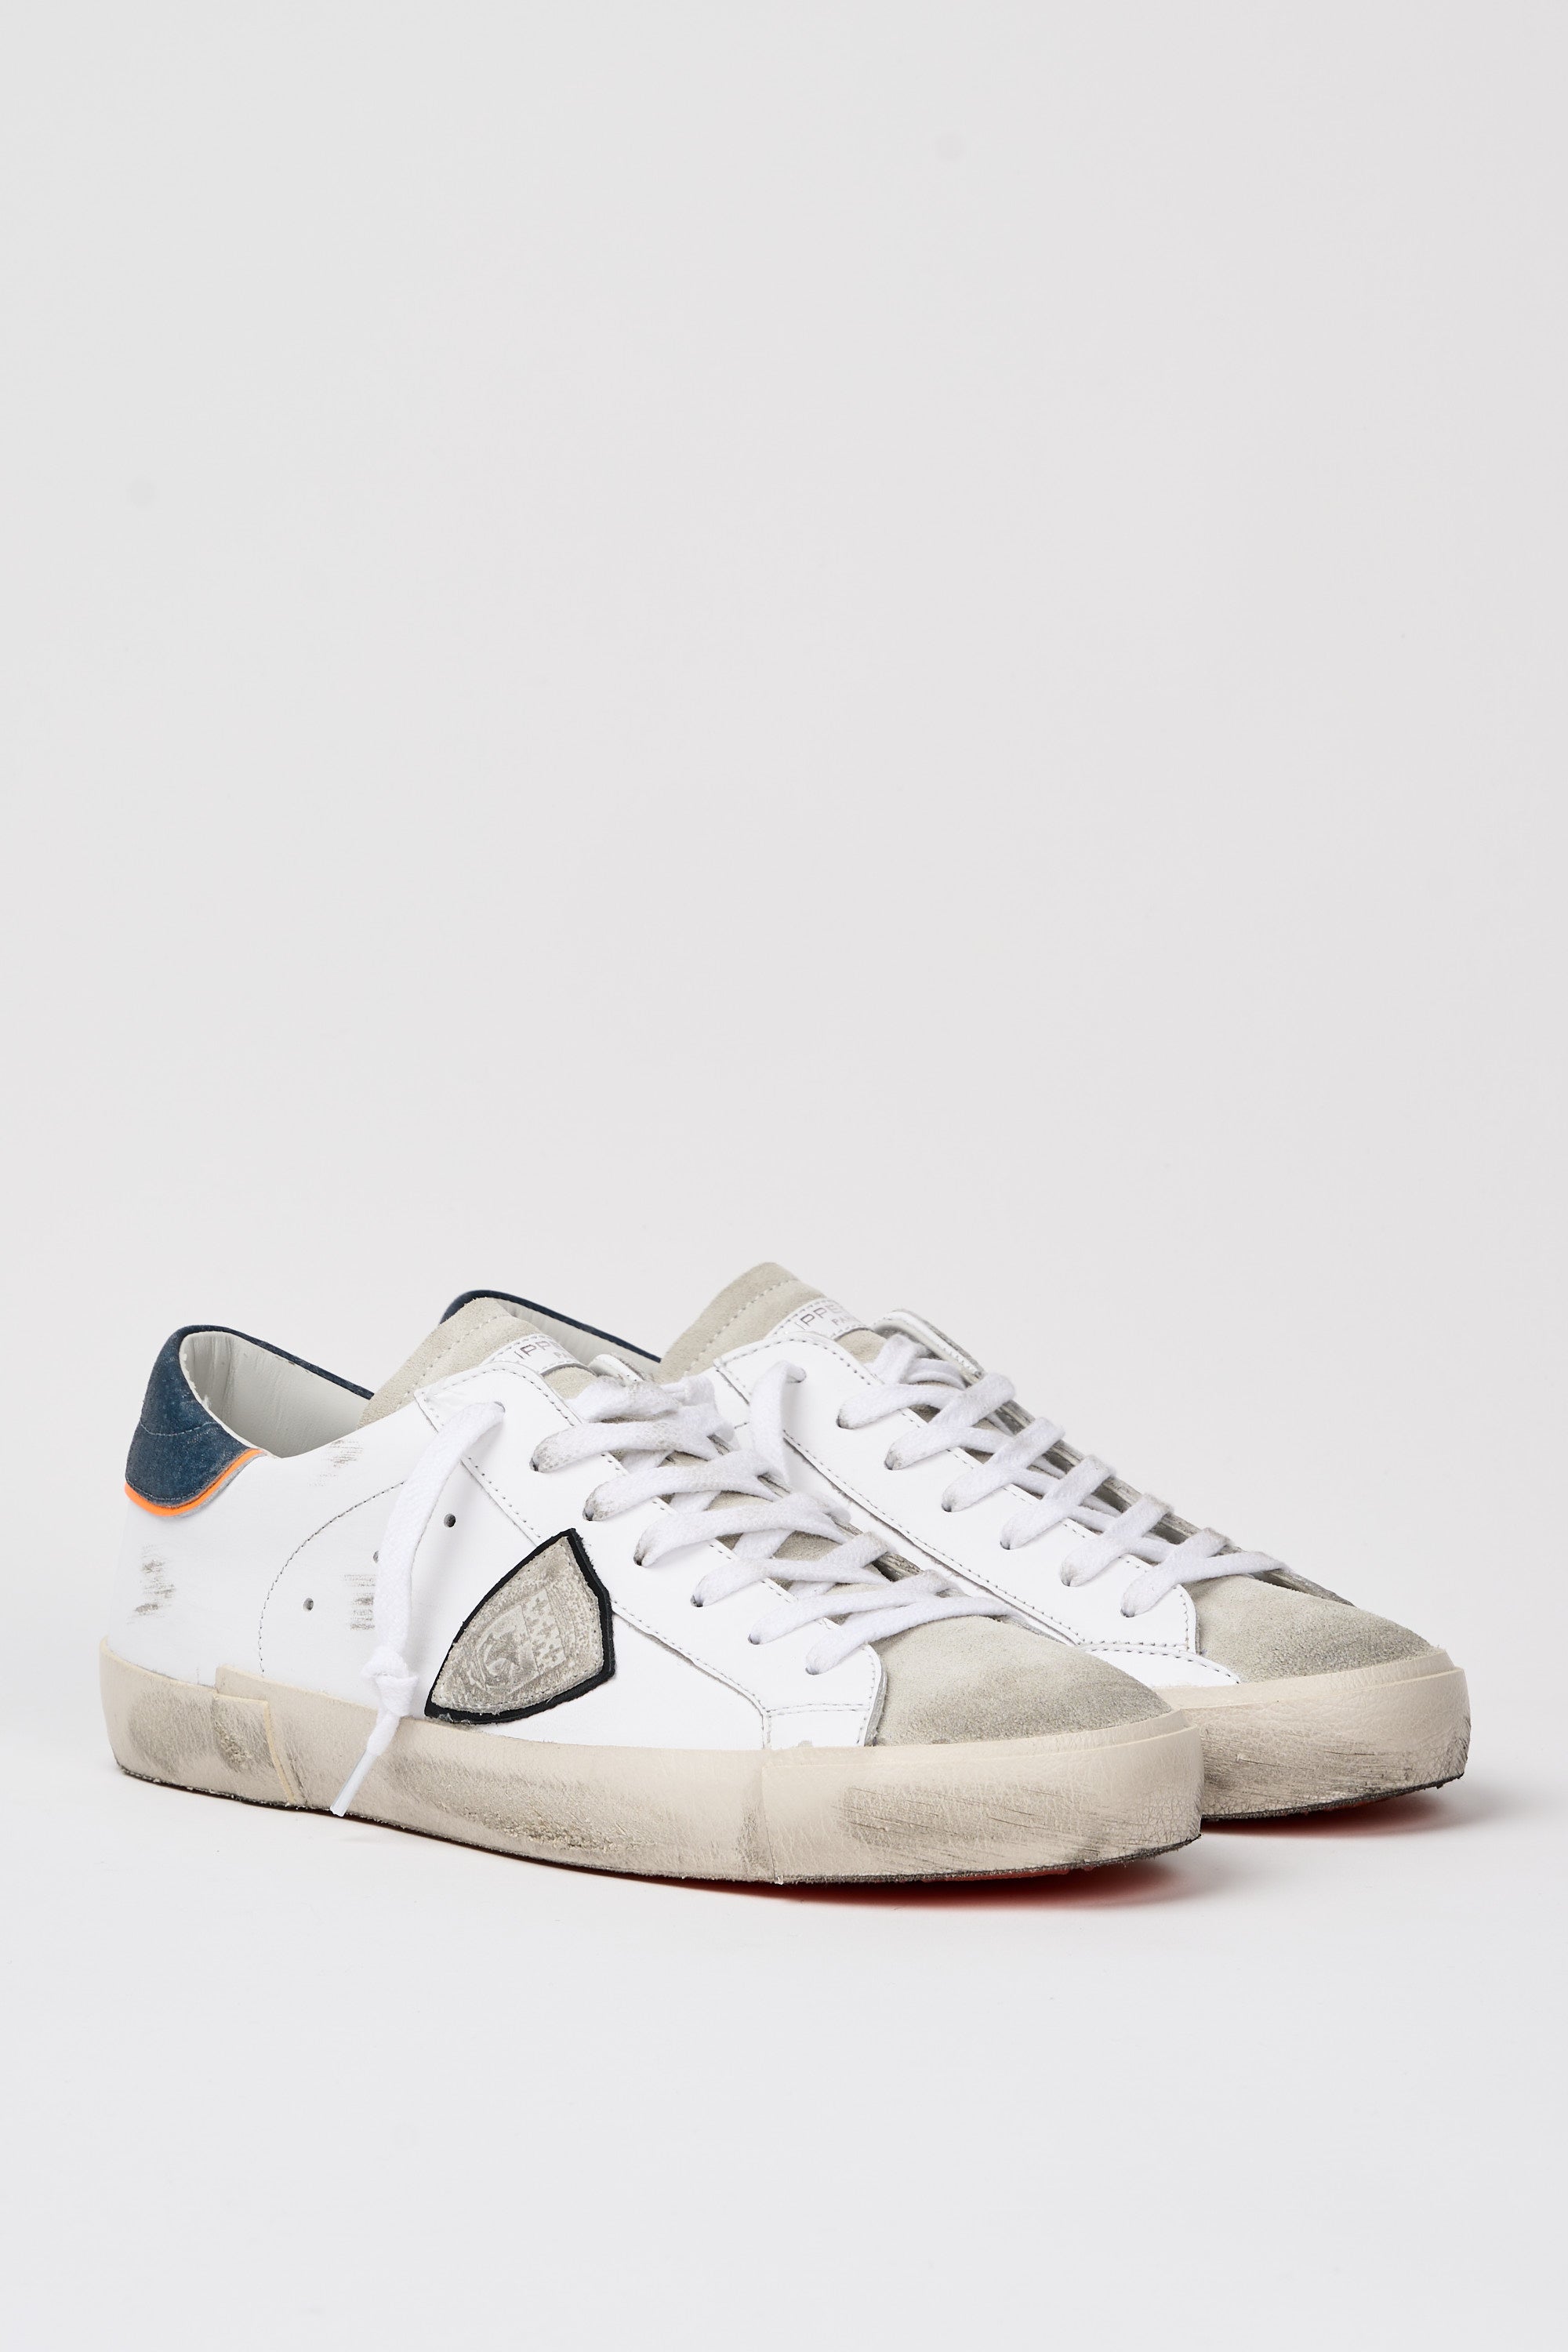 Philippe Model Sneaker Prsx Leather/Suede White/Denim-2